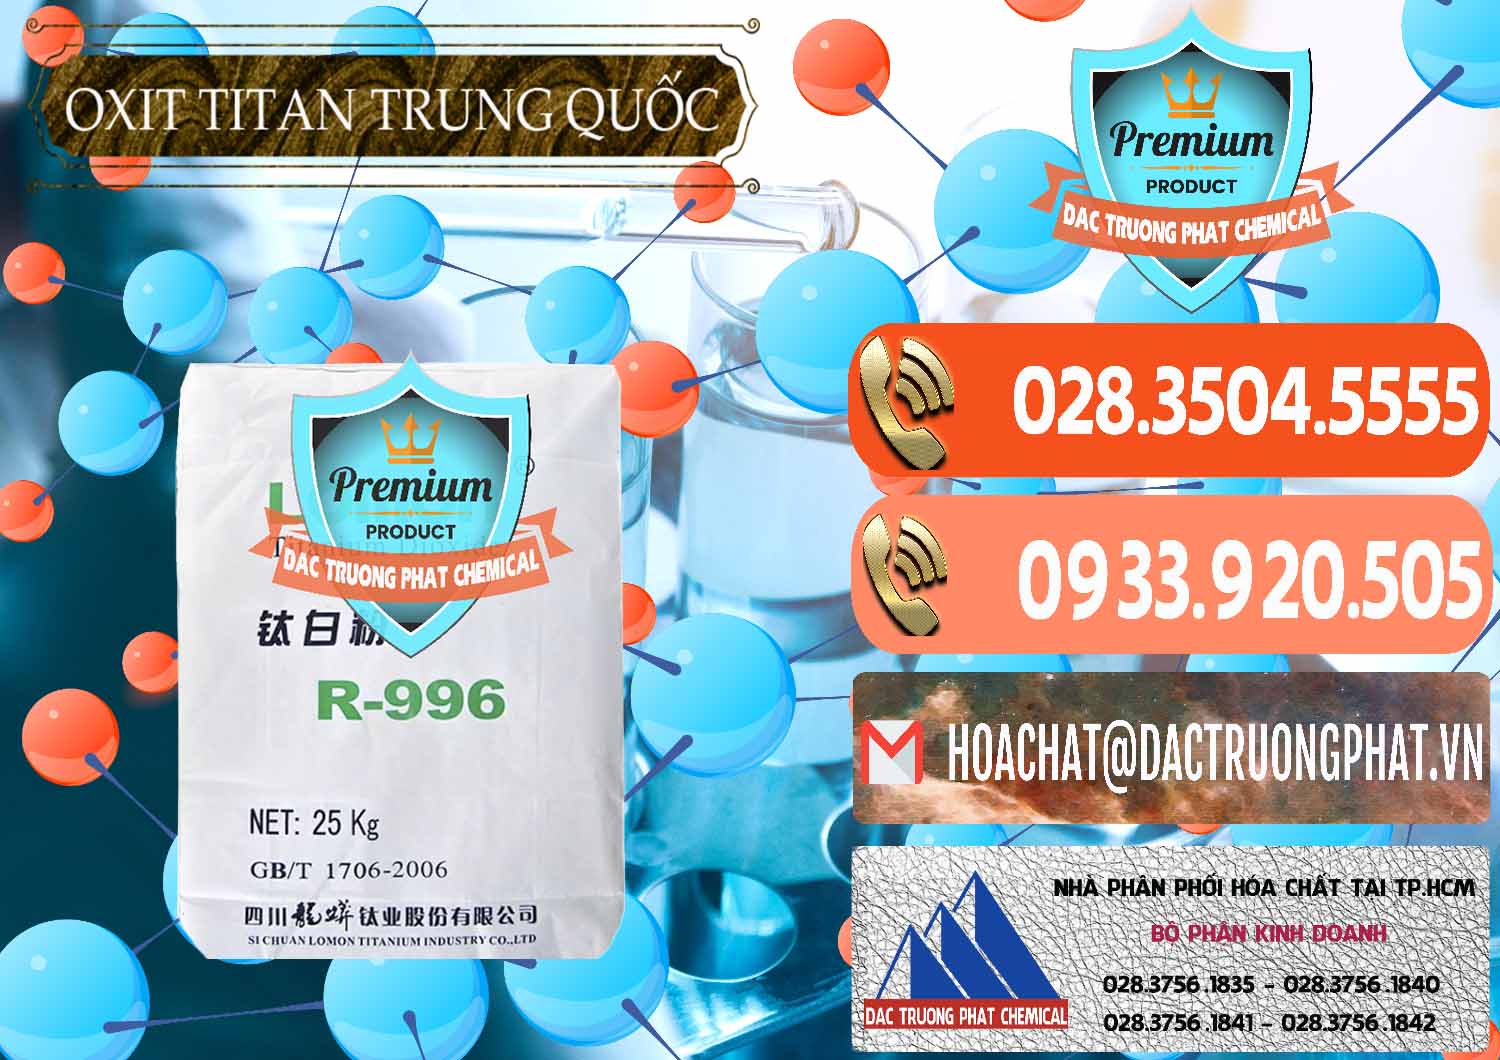 Nơi chuyên bán và phân phối Oxit Titan KA100 – Tio2 Trung Quốc China - 0398 - Cty kinh doanh & cung cấp hóa chất tại TP.HCM - hoachatmientay.com